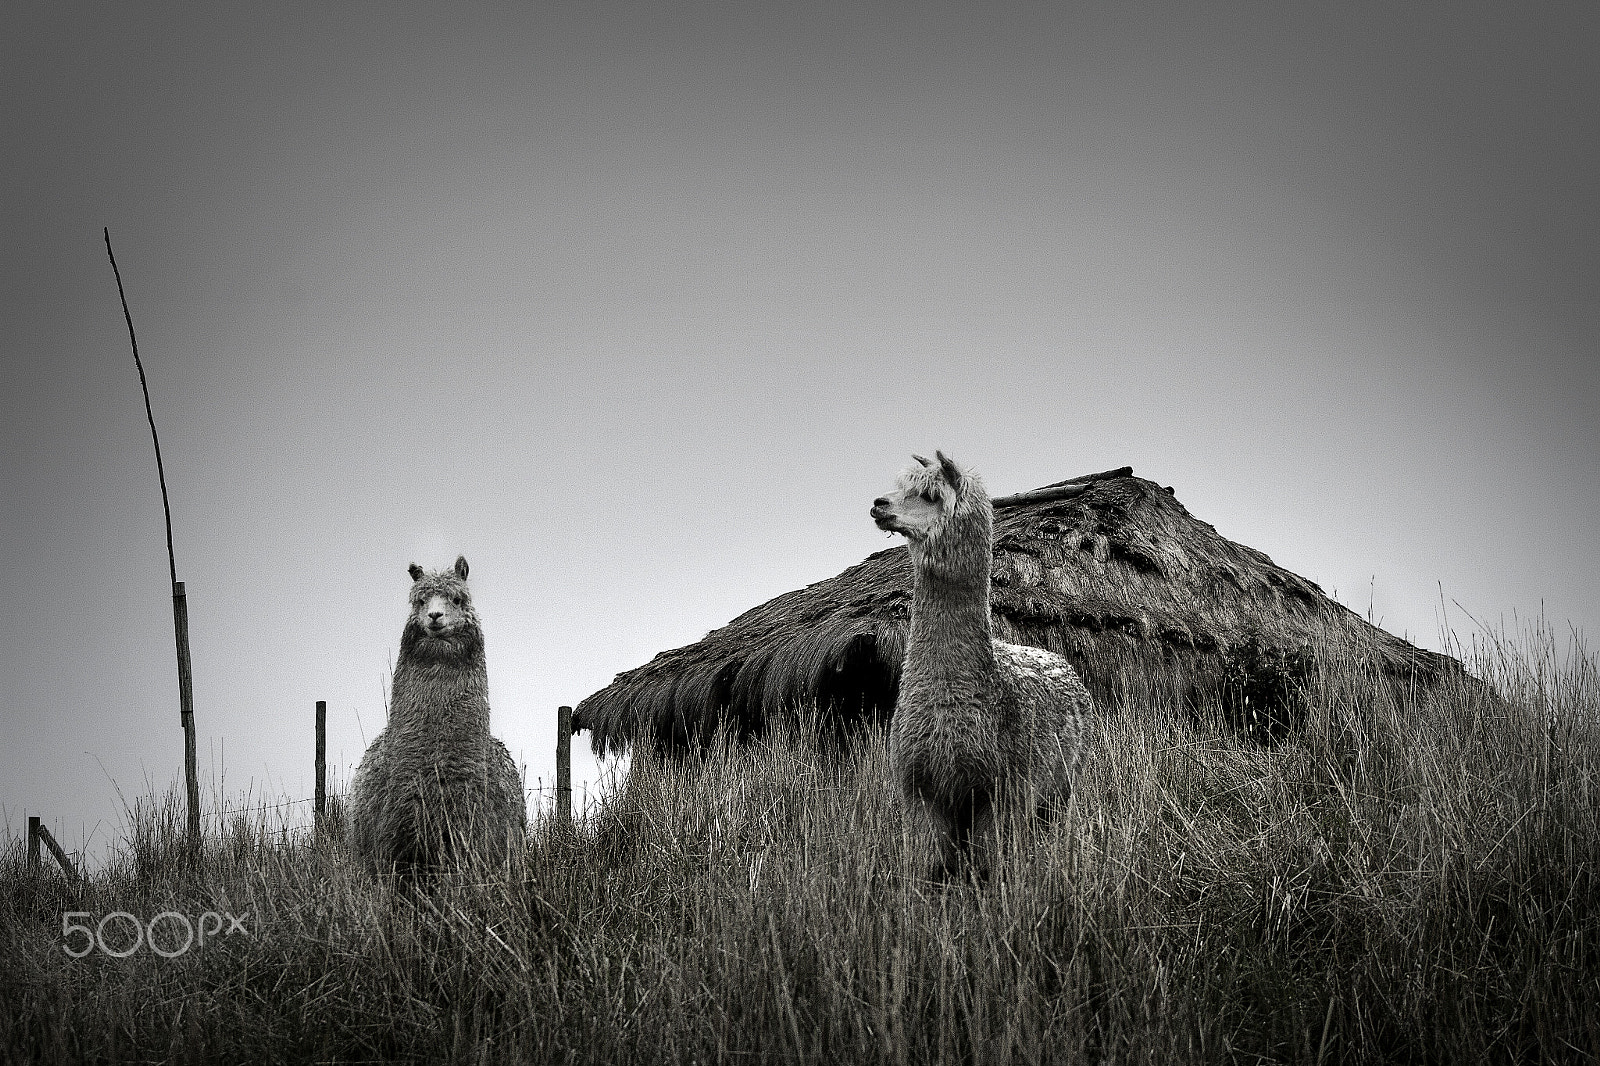 Canon EOS 7D + EF75-300mm f/4-5.6 sample photo. Alpacas andes ecuador photography